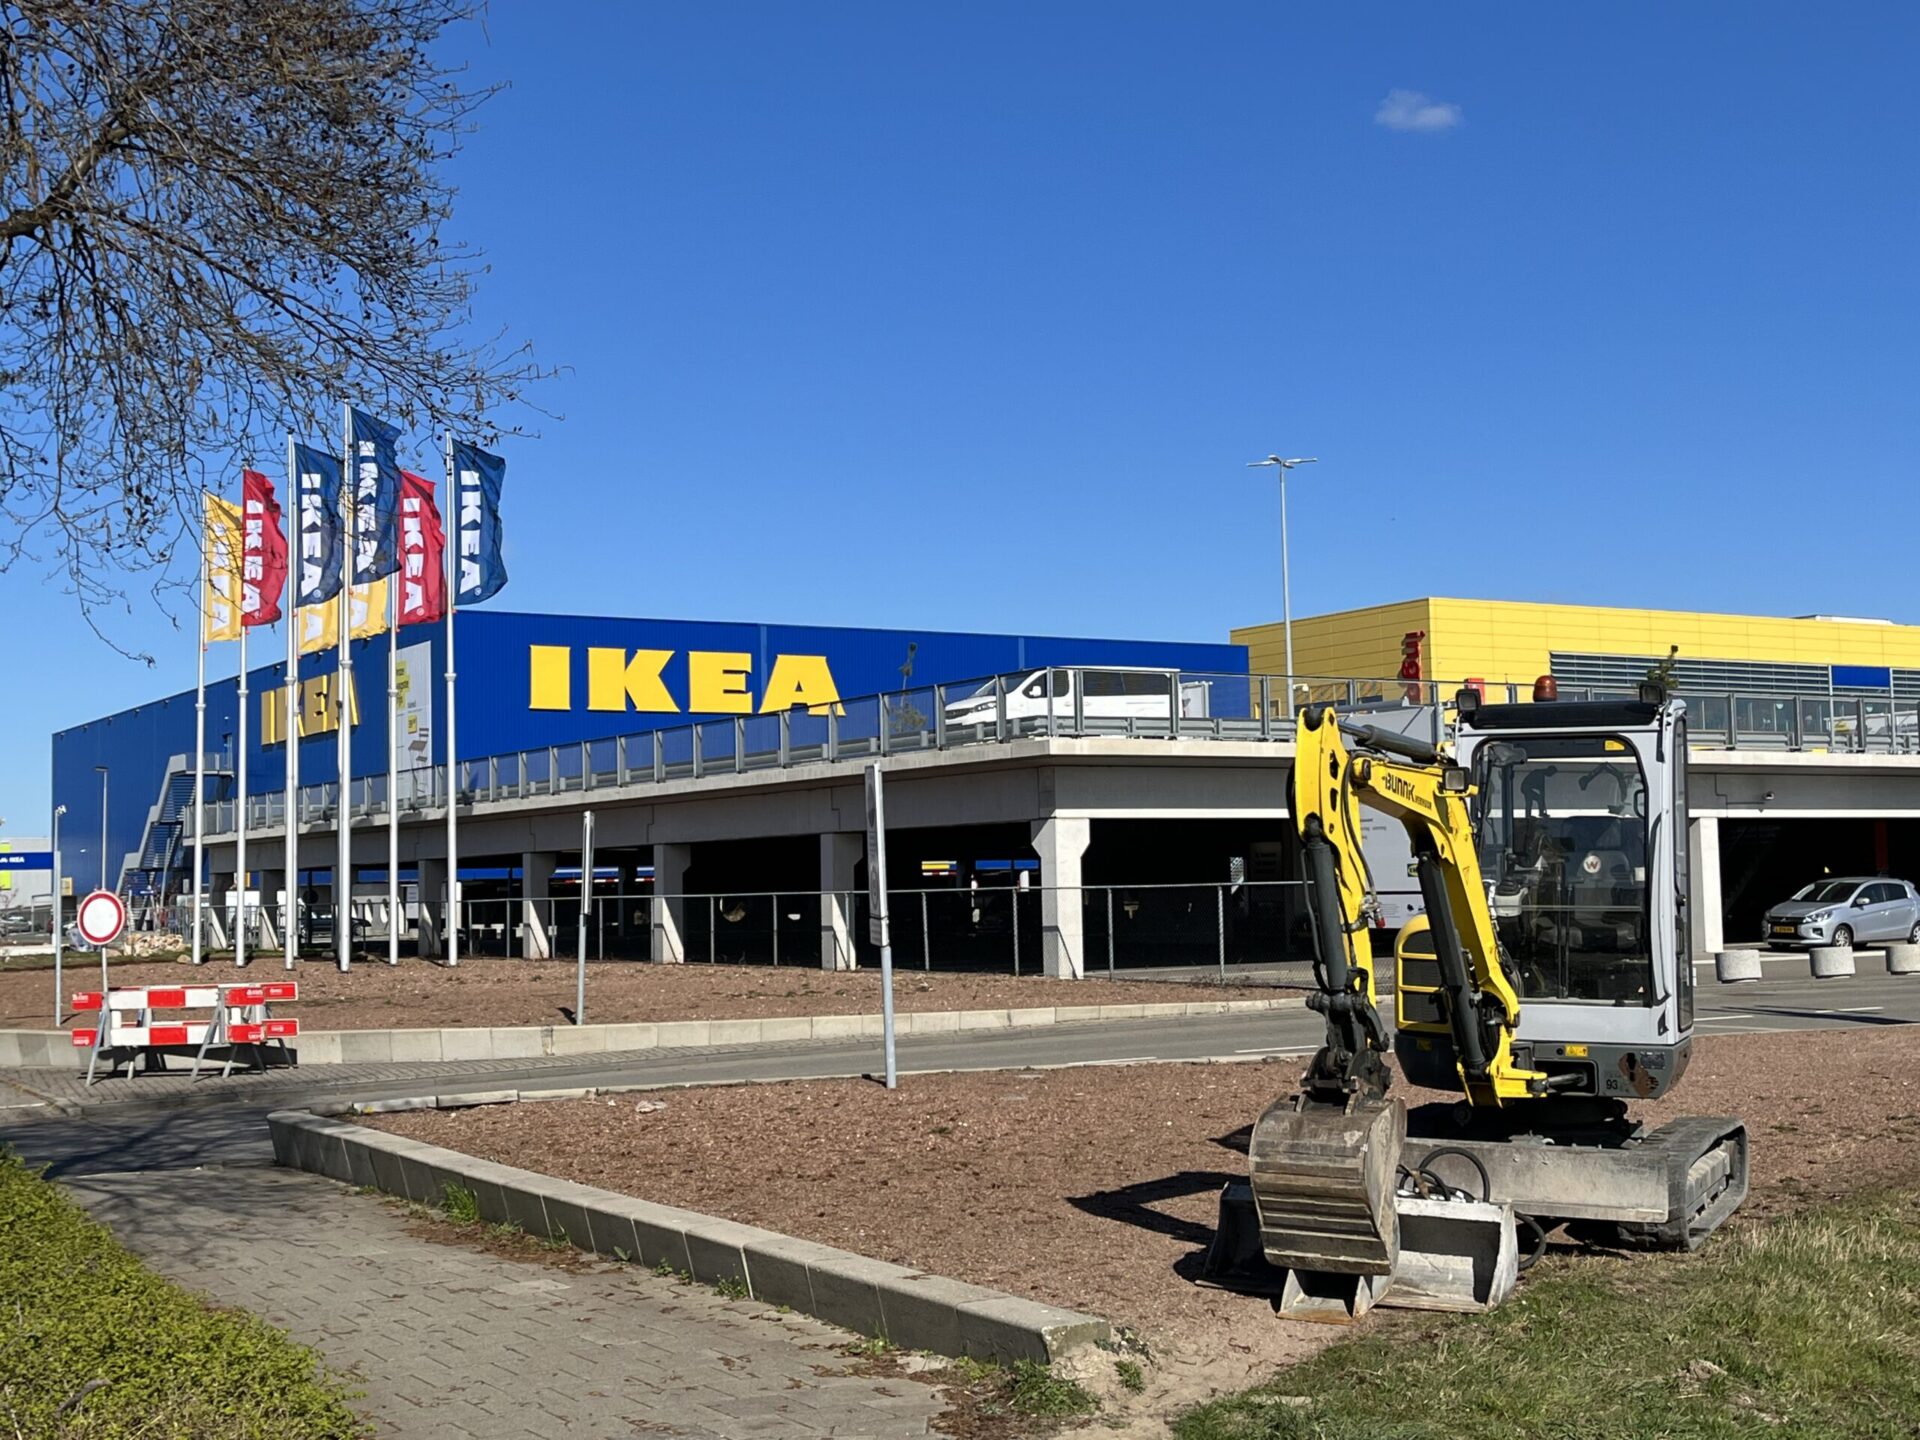 イケア IKEA NLでブランチ&ショッピング